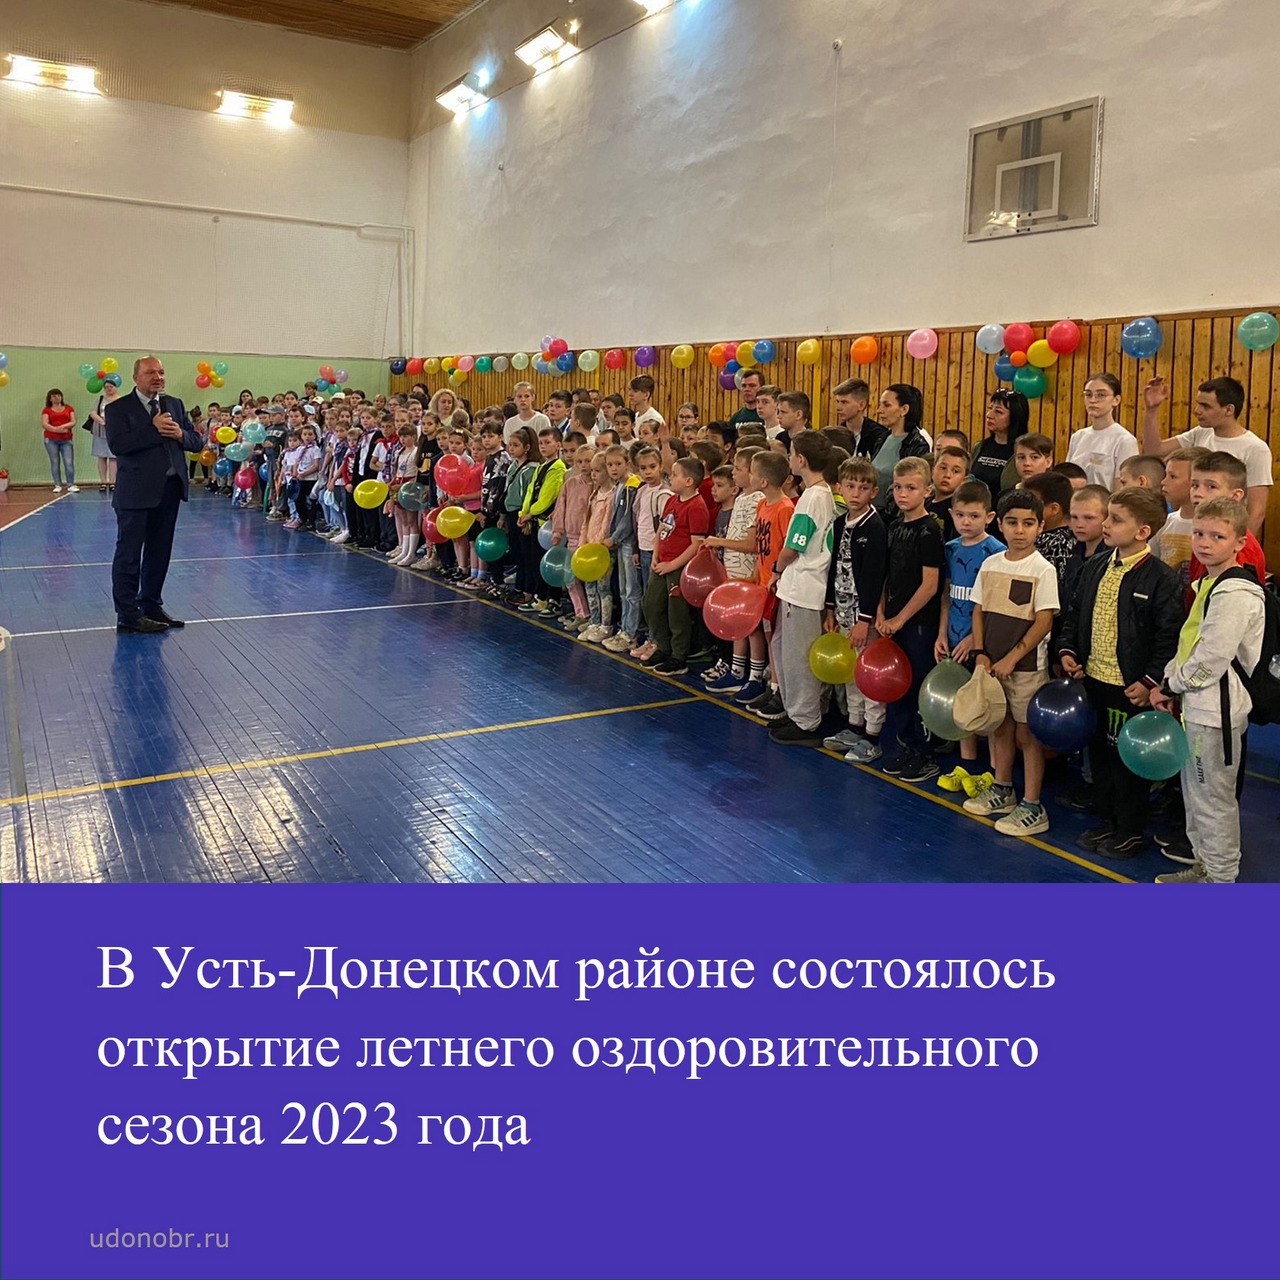 В Усть-Донецком районе состоялось открытие летнего оздоровительного сезона 2023 года